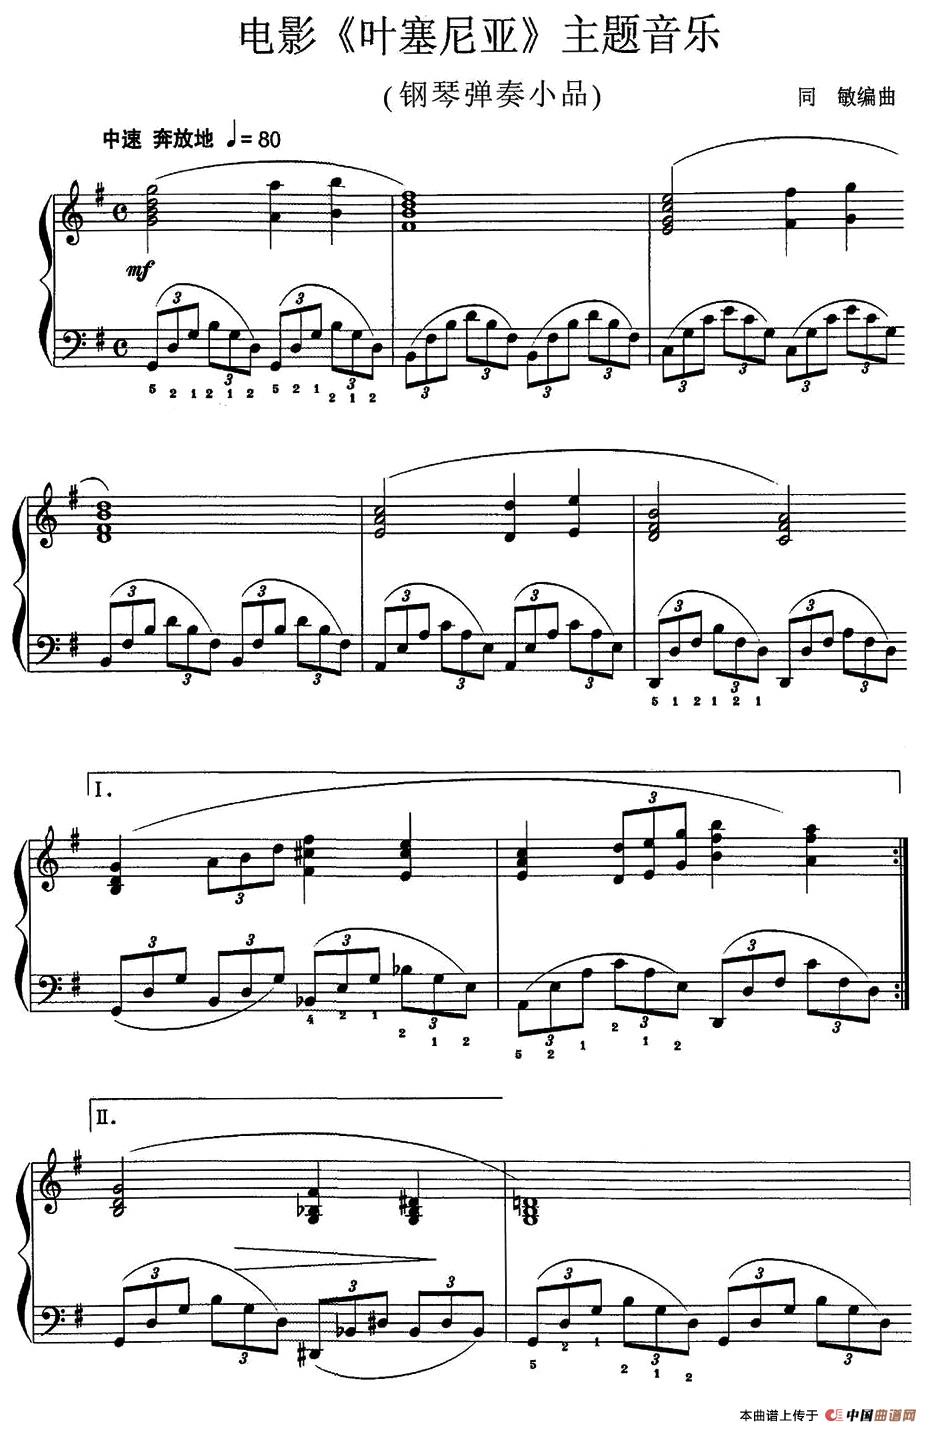 《电影《叶塞尼亚》主题音乐》钢琴曲谱图分享